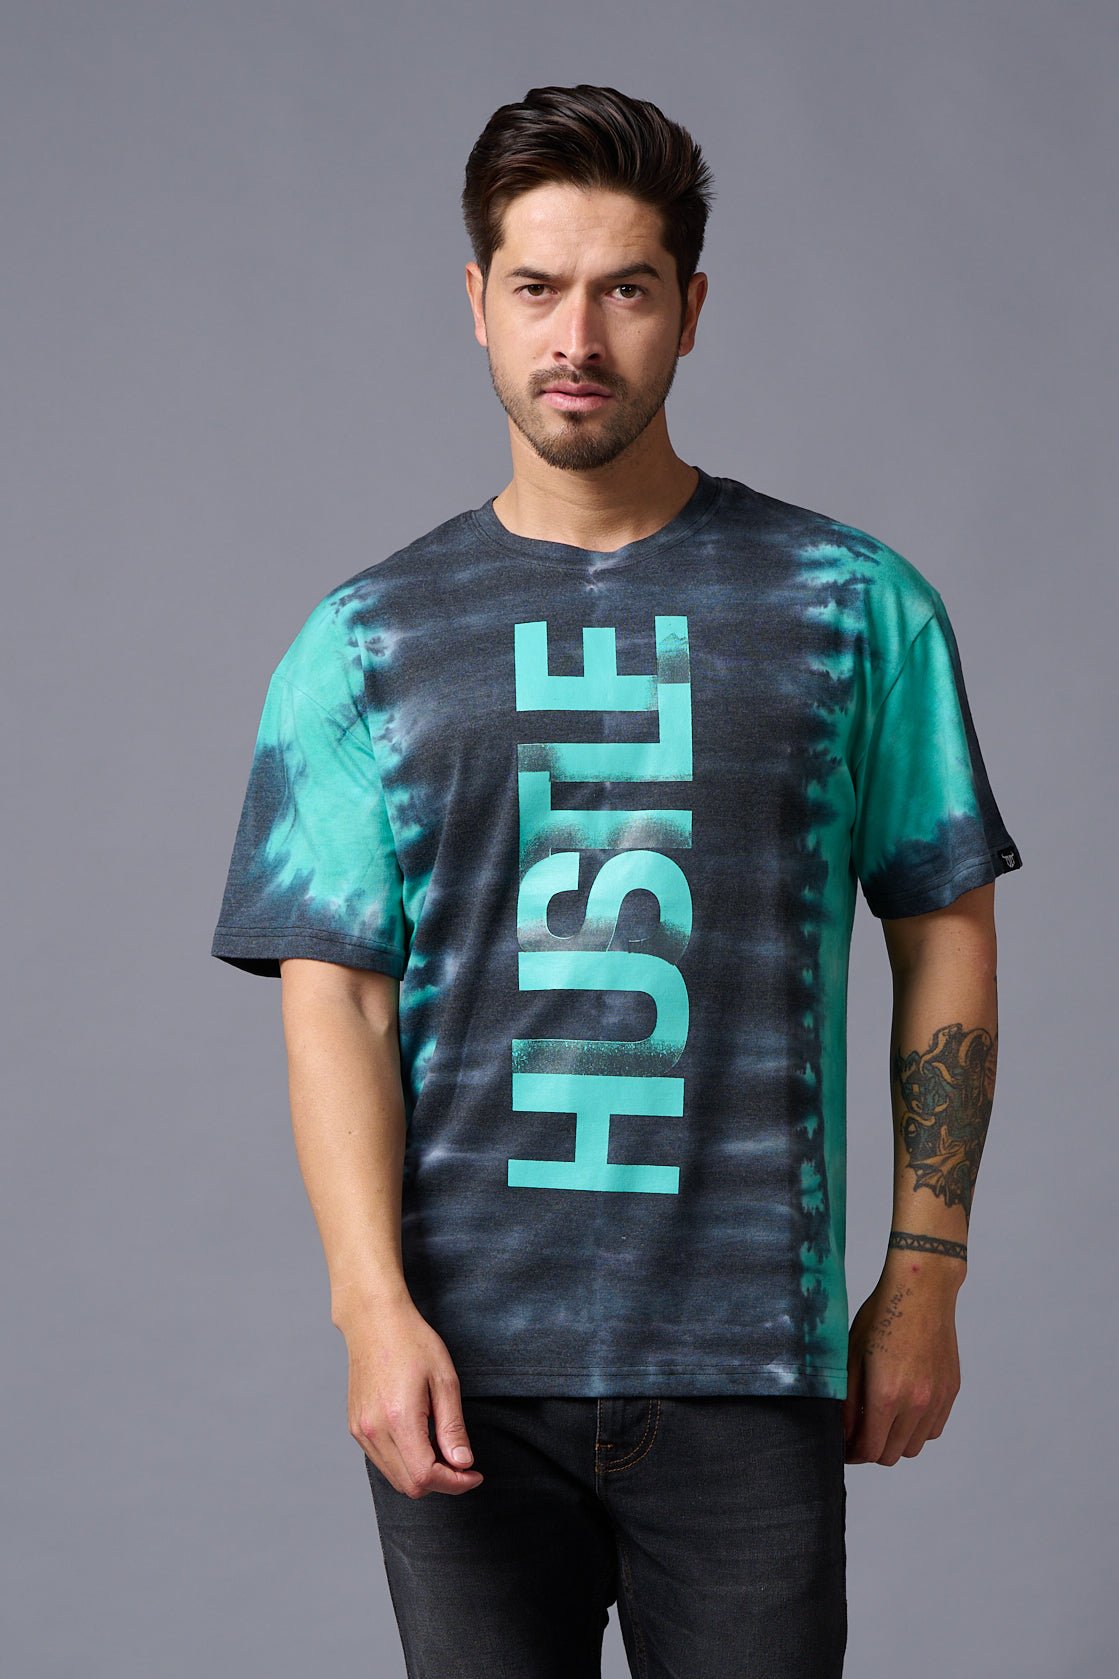 Hustle Printed Tye Die Oversized T-Shirt for Men - Go Devil